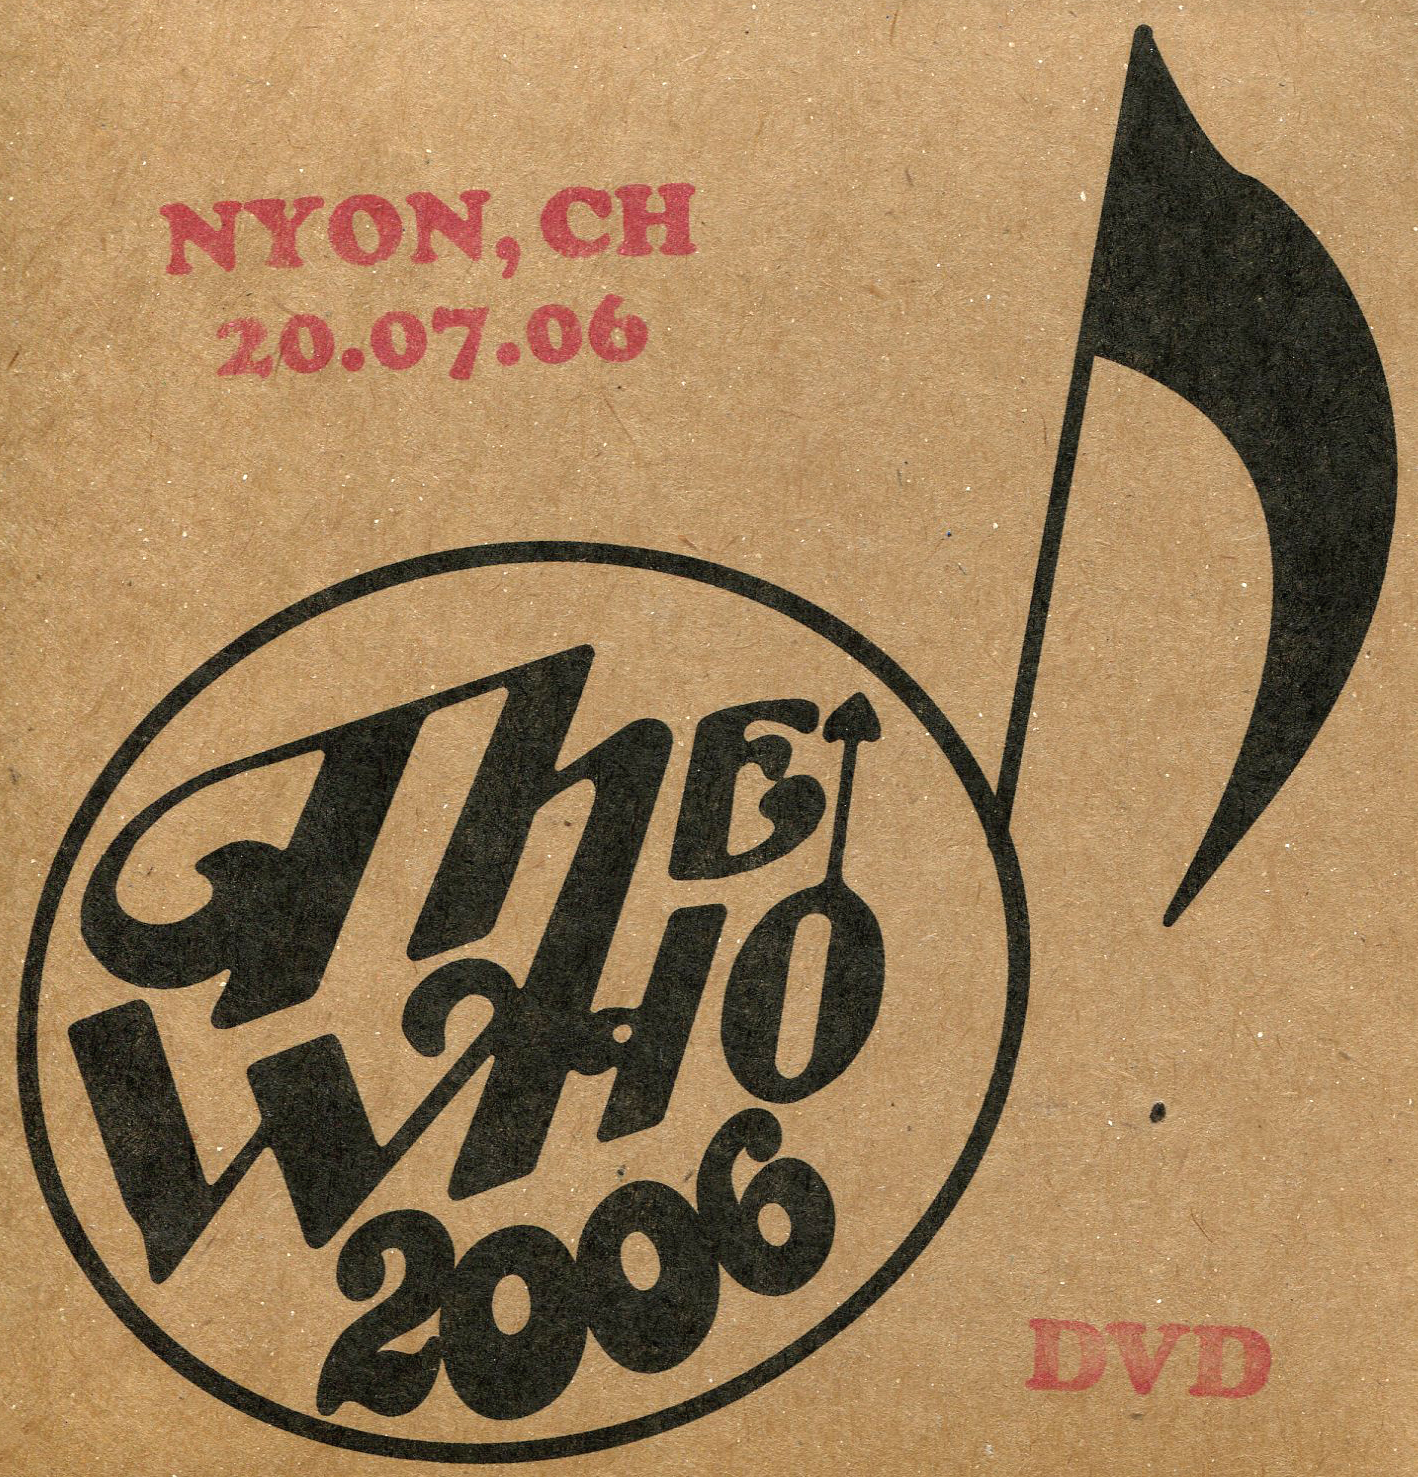 Live Nyon, CH 07/20/06 Video DVD